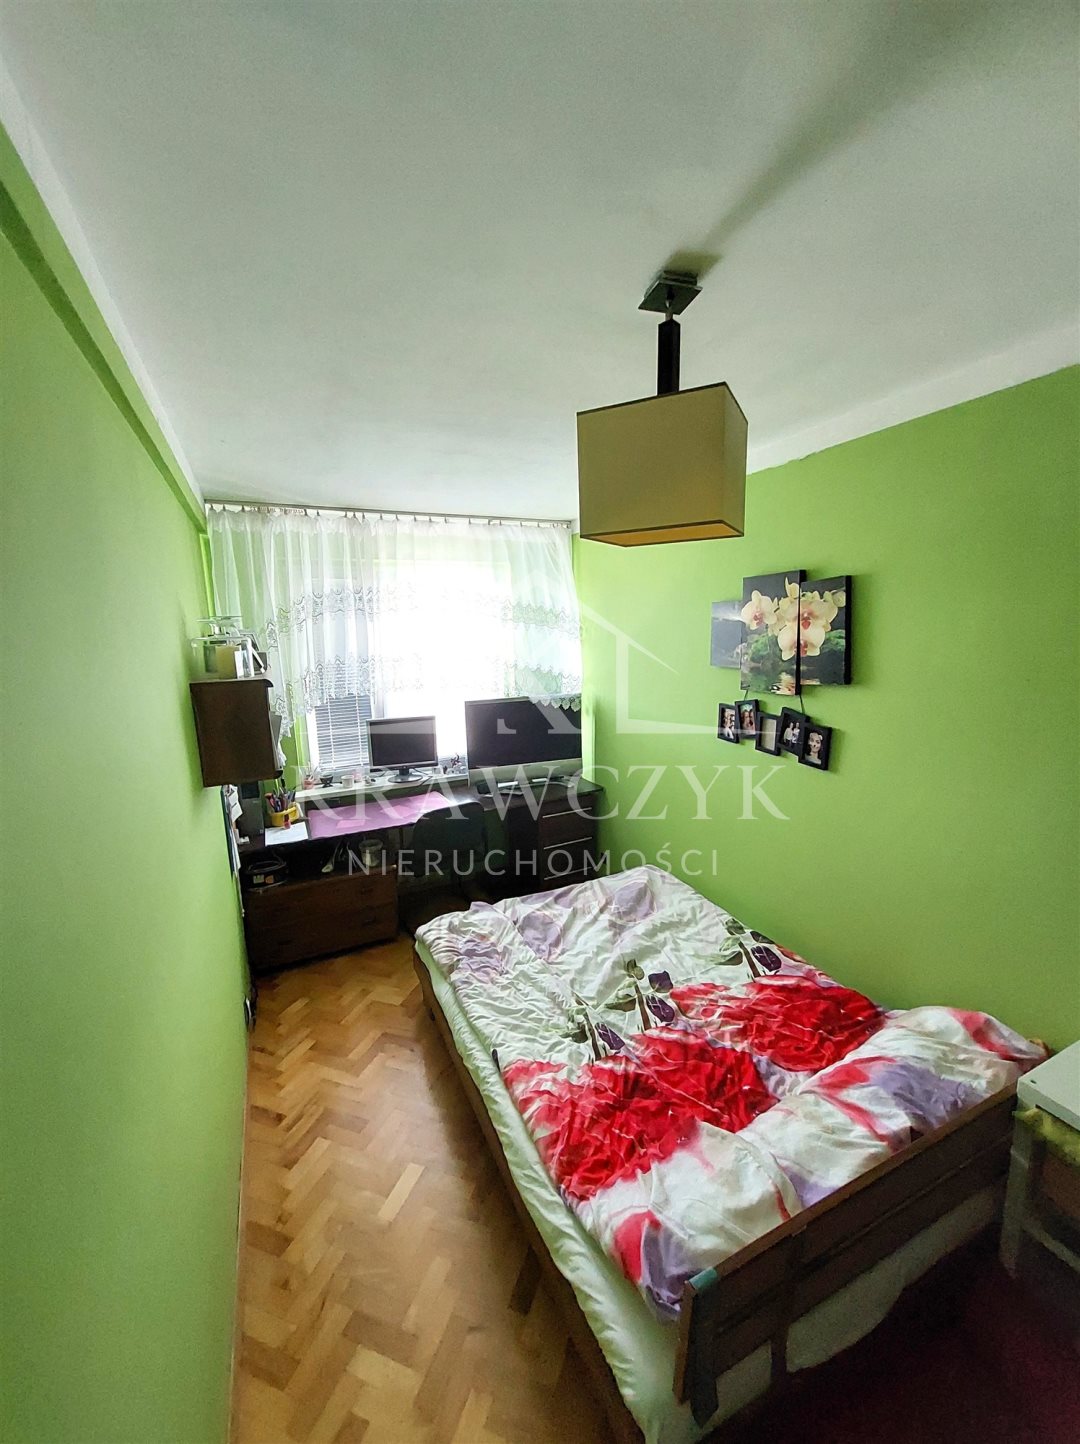 Mieszkanie, 4 pok., 65 m2, Szczecin Turzyn (4)